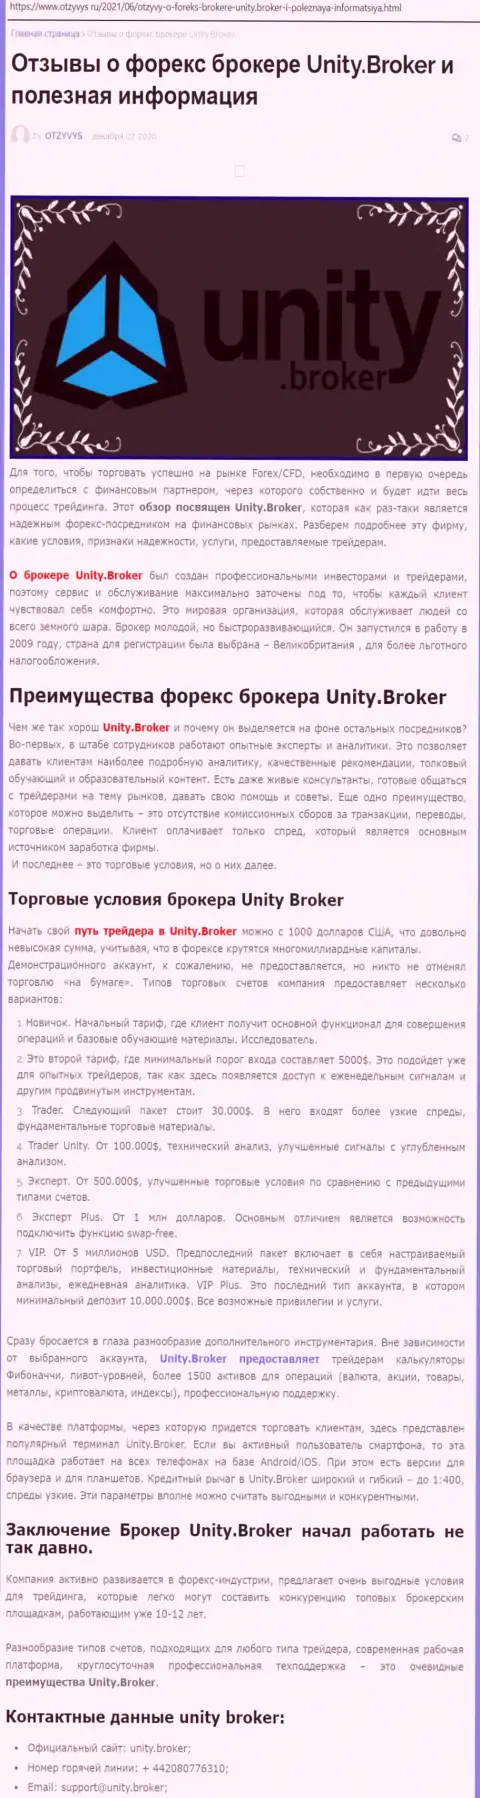 Обзорная статья о форекс-дилере Юнити Брокер на web-портале otzyvys ru